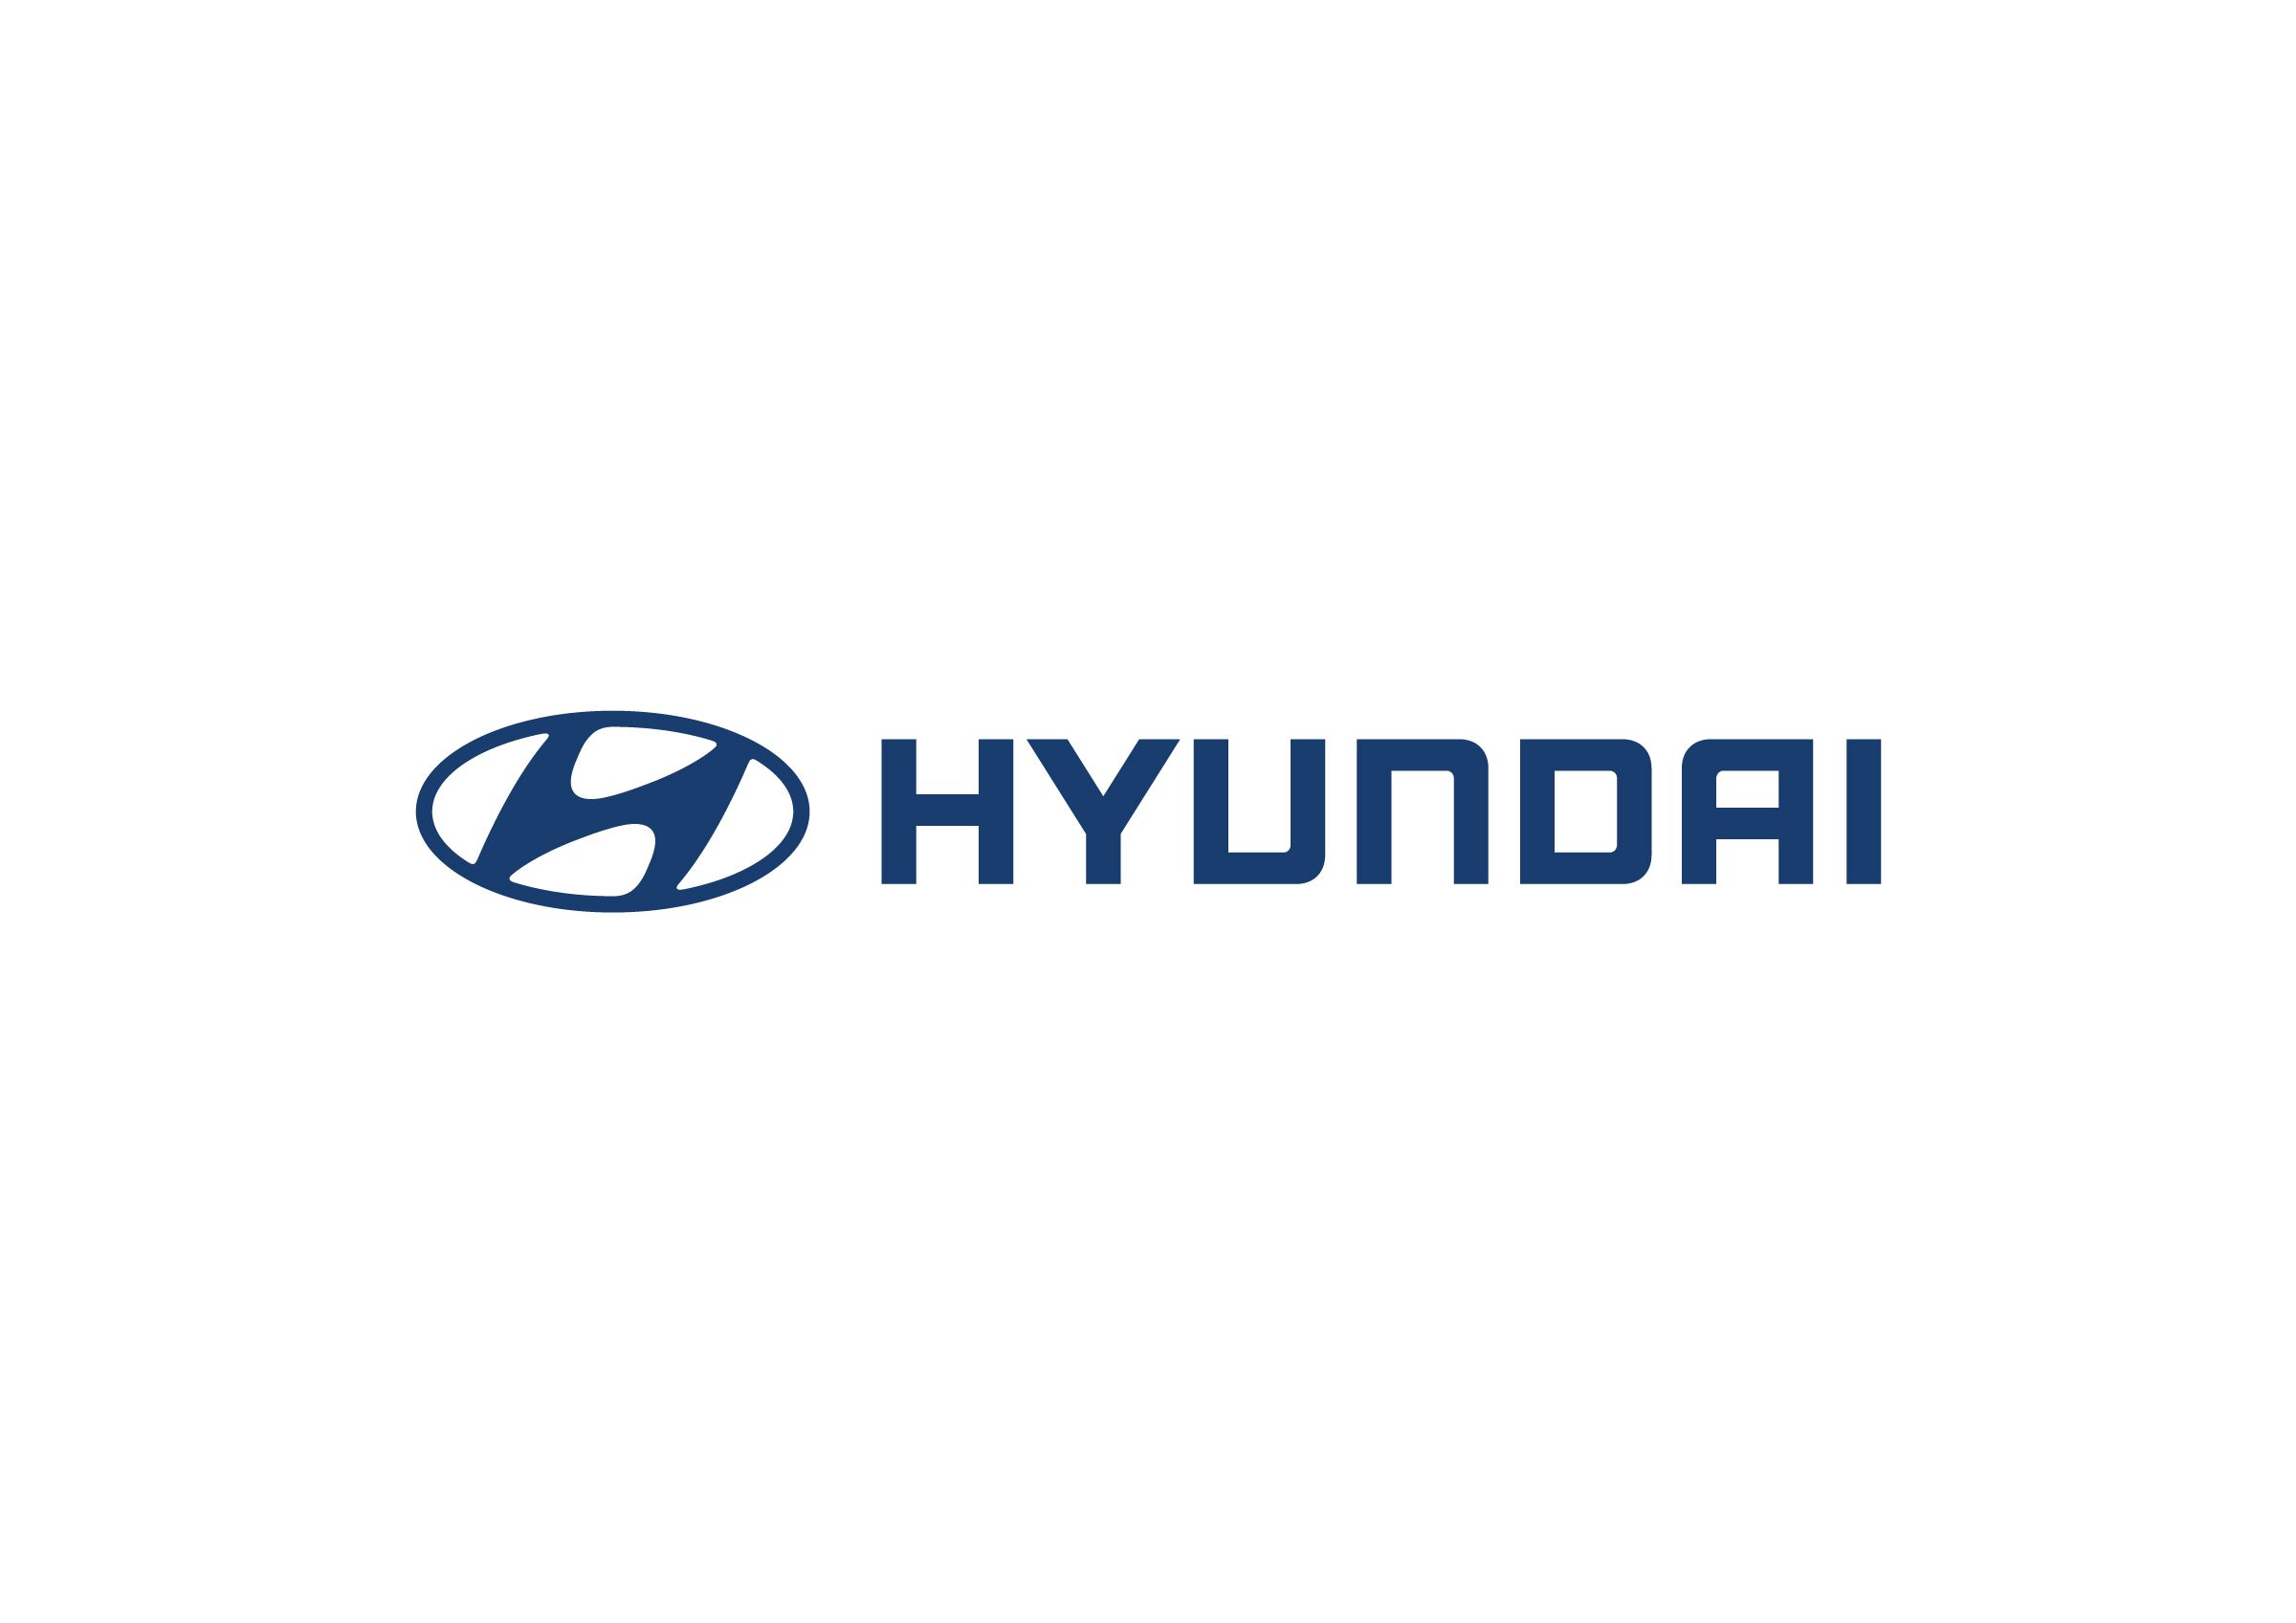 hyundai_logo_horizontal